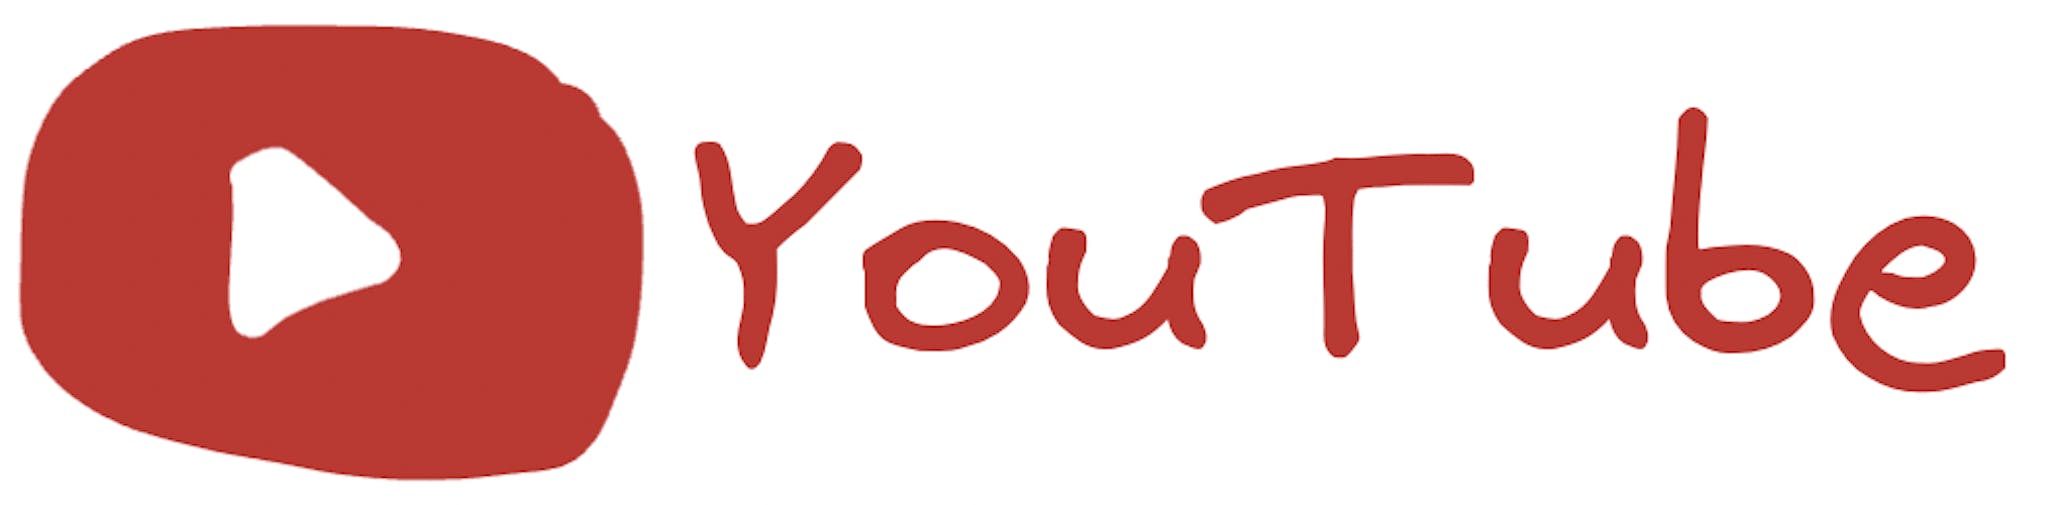 A fascimile of the YouTube logo.